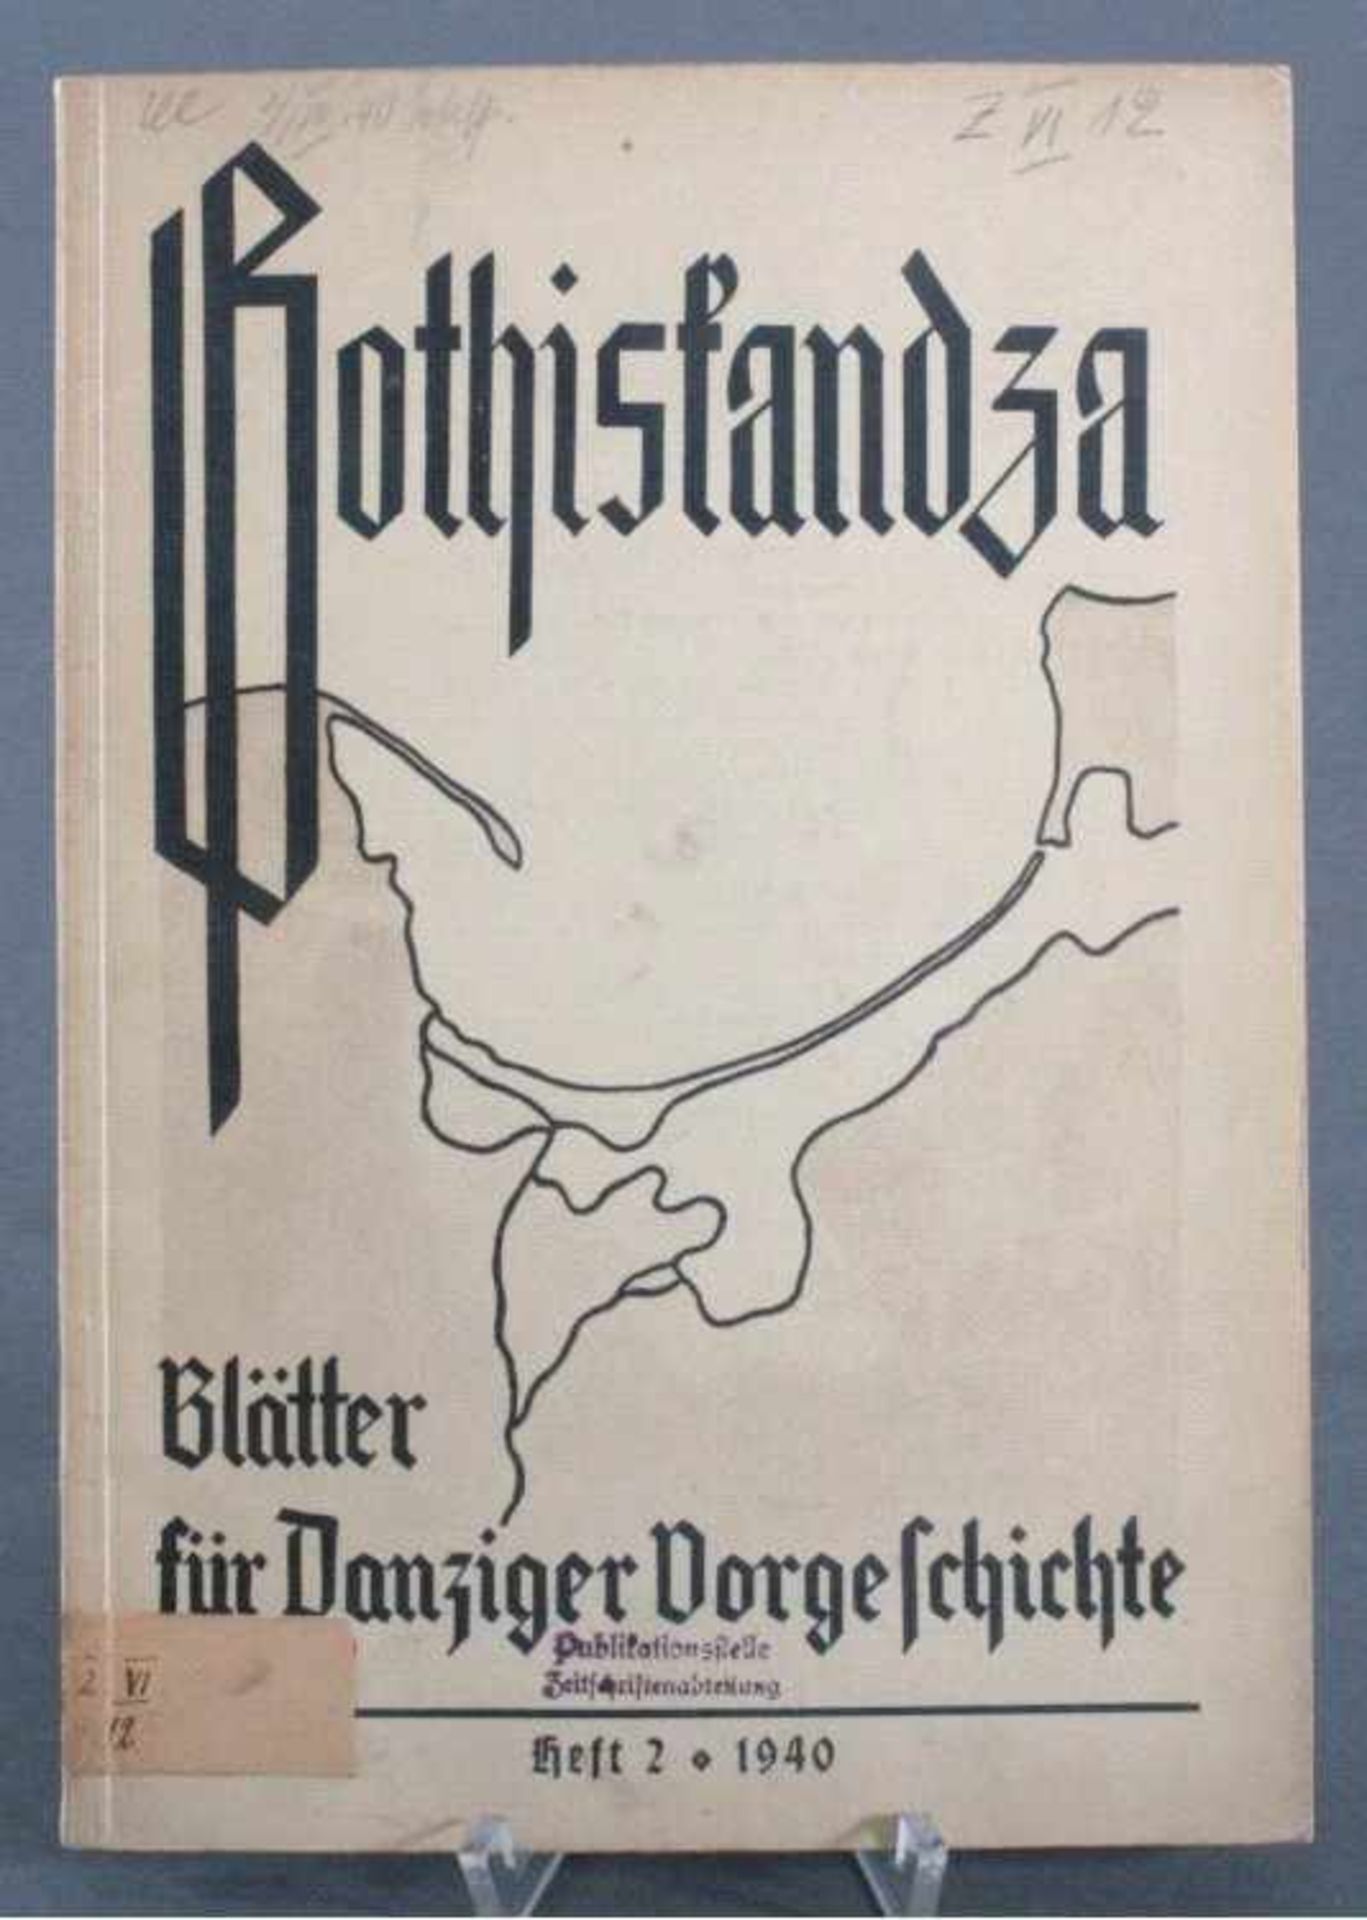 Gothiskandza - Blätter für Danziger Vorgeschichte, 2/1940Heft 2-1940. Neue Folge der Blätter für